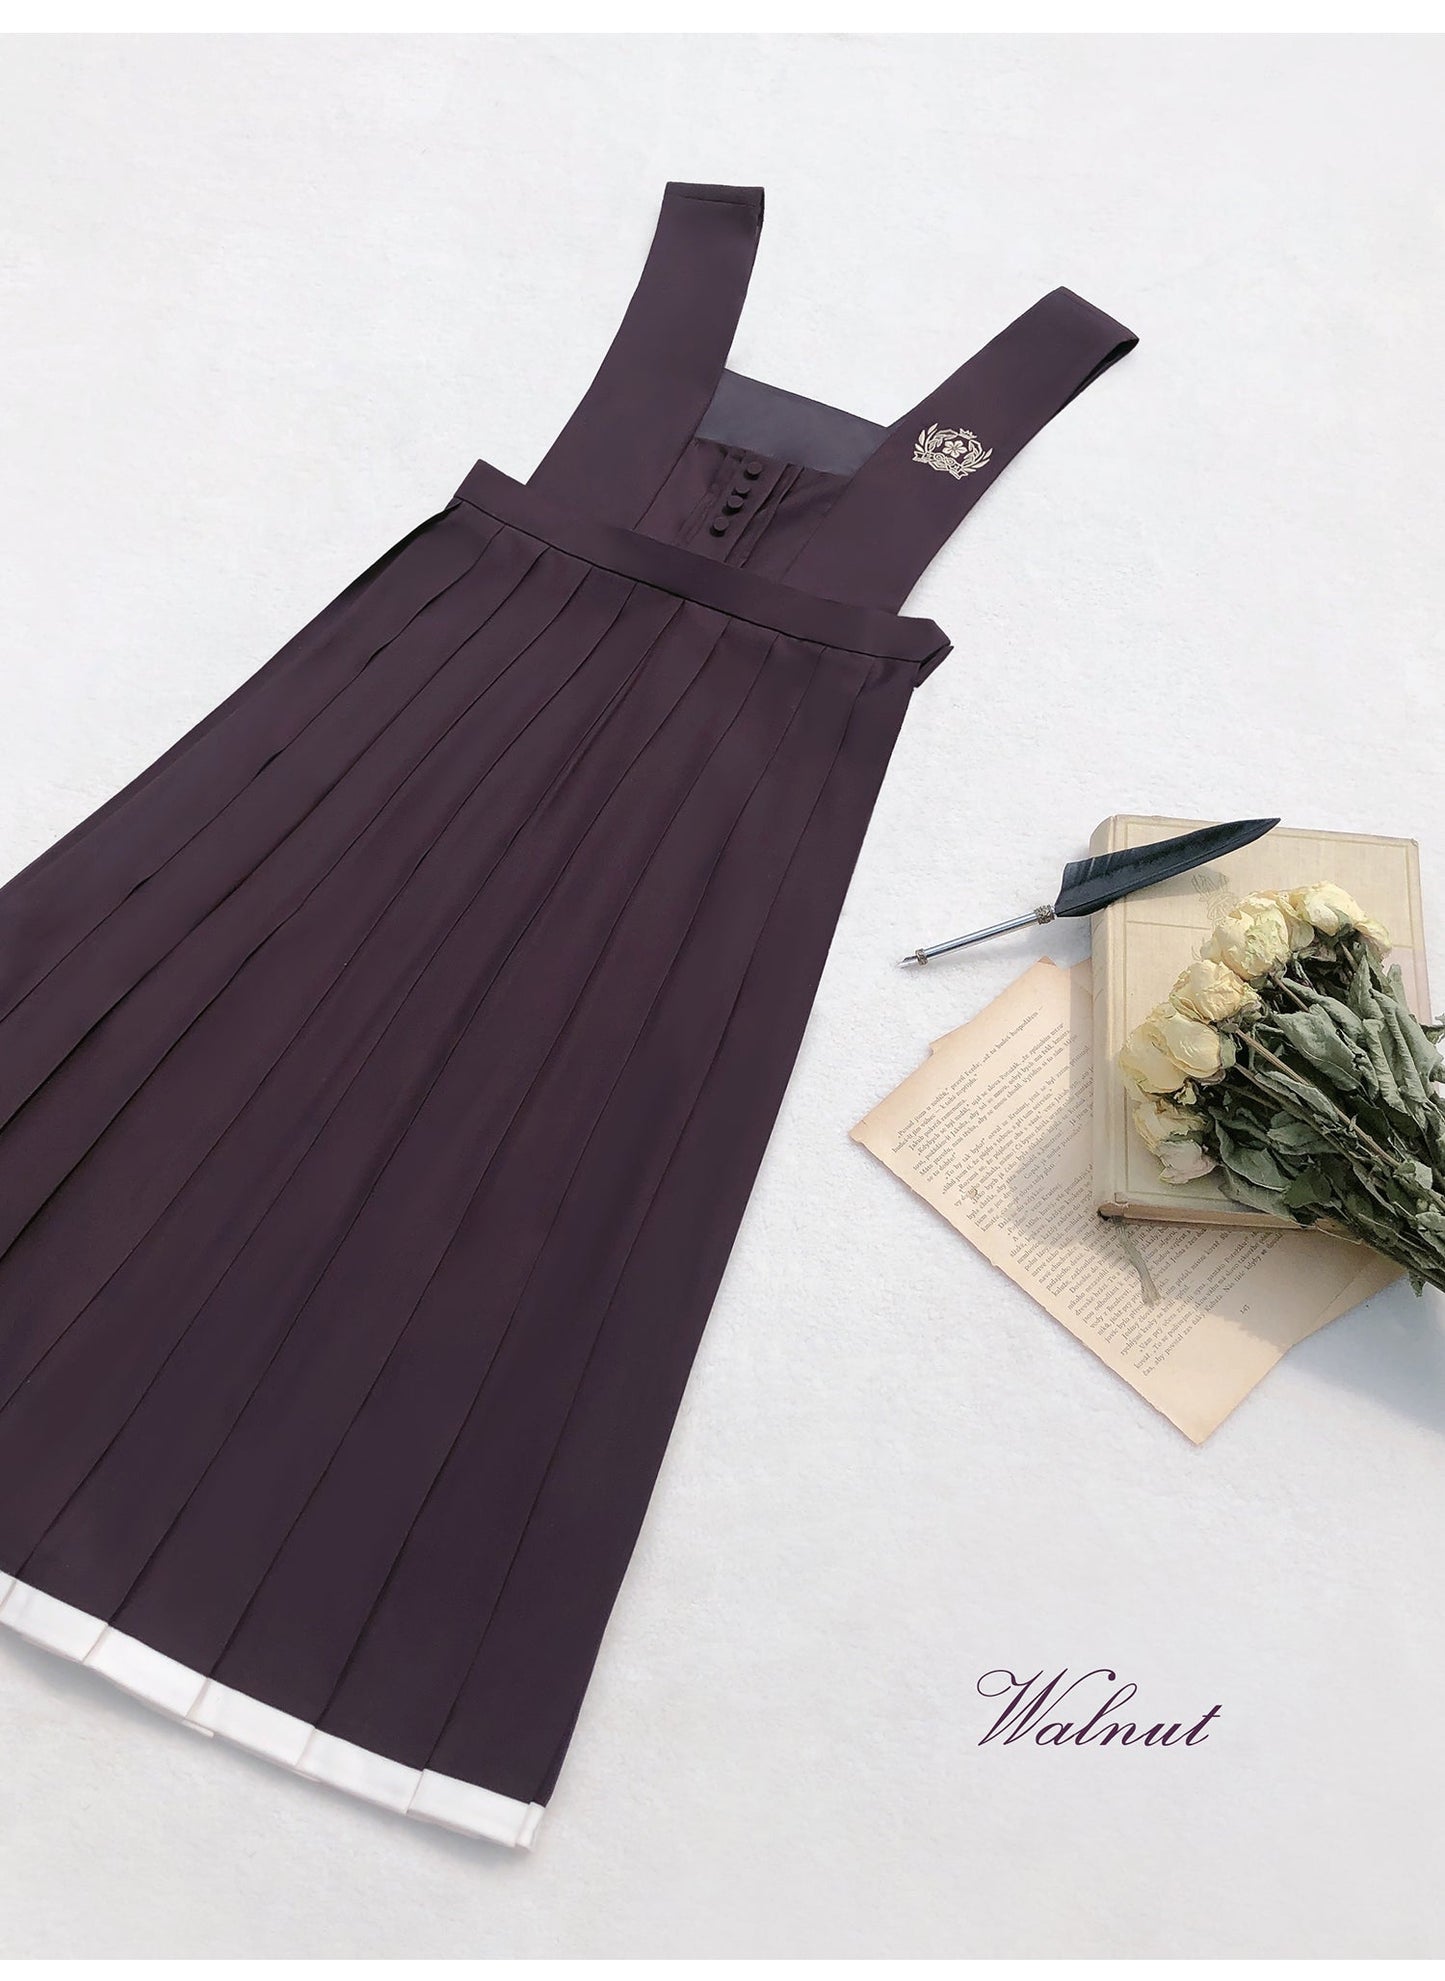 和風深紫のジャンパースカートと羽織・ブラウス5点セット